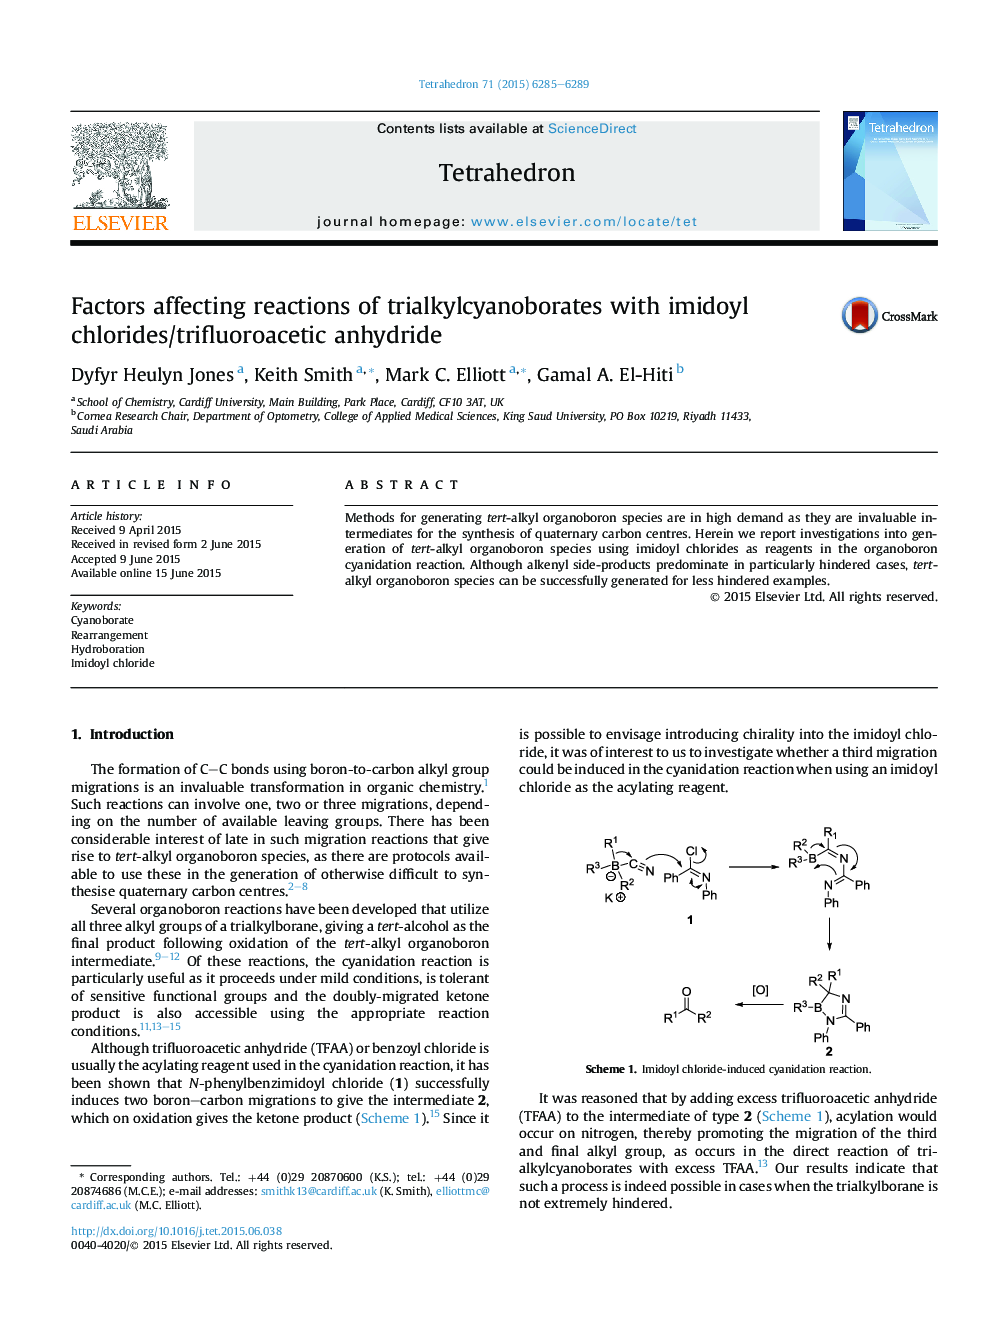 عوامل مؤثر بر واکنش های تریلاکیل سینابورات ها با امیدویل کلرید / آنیدرید تری فلووراتیک 